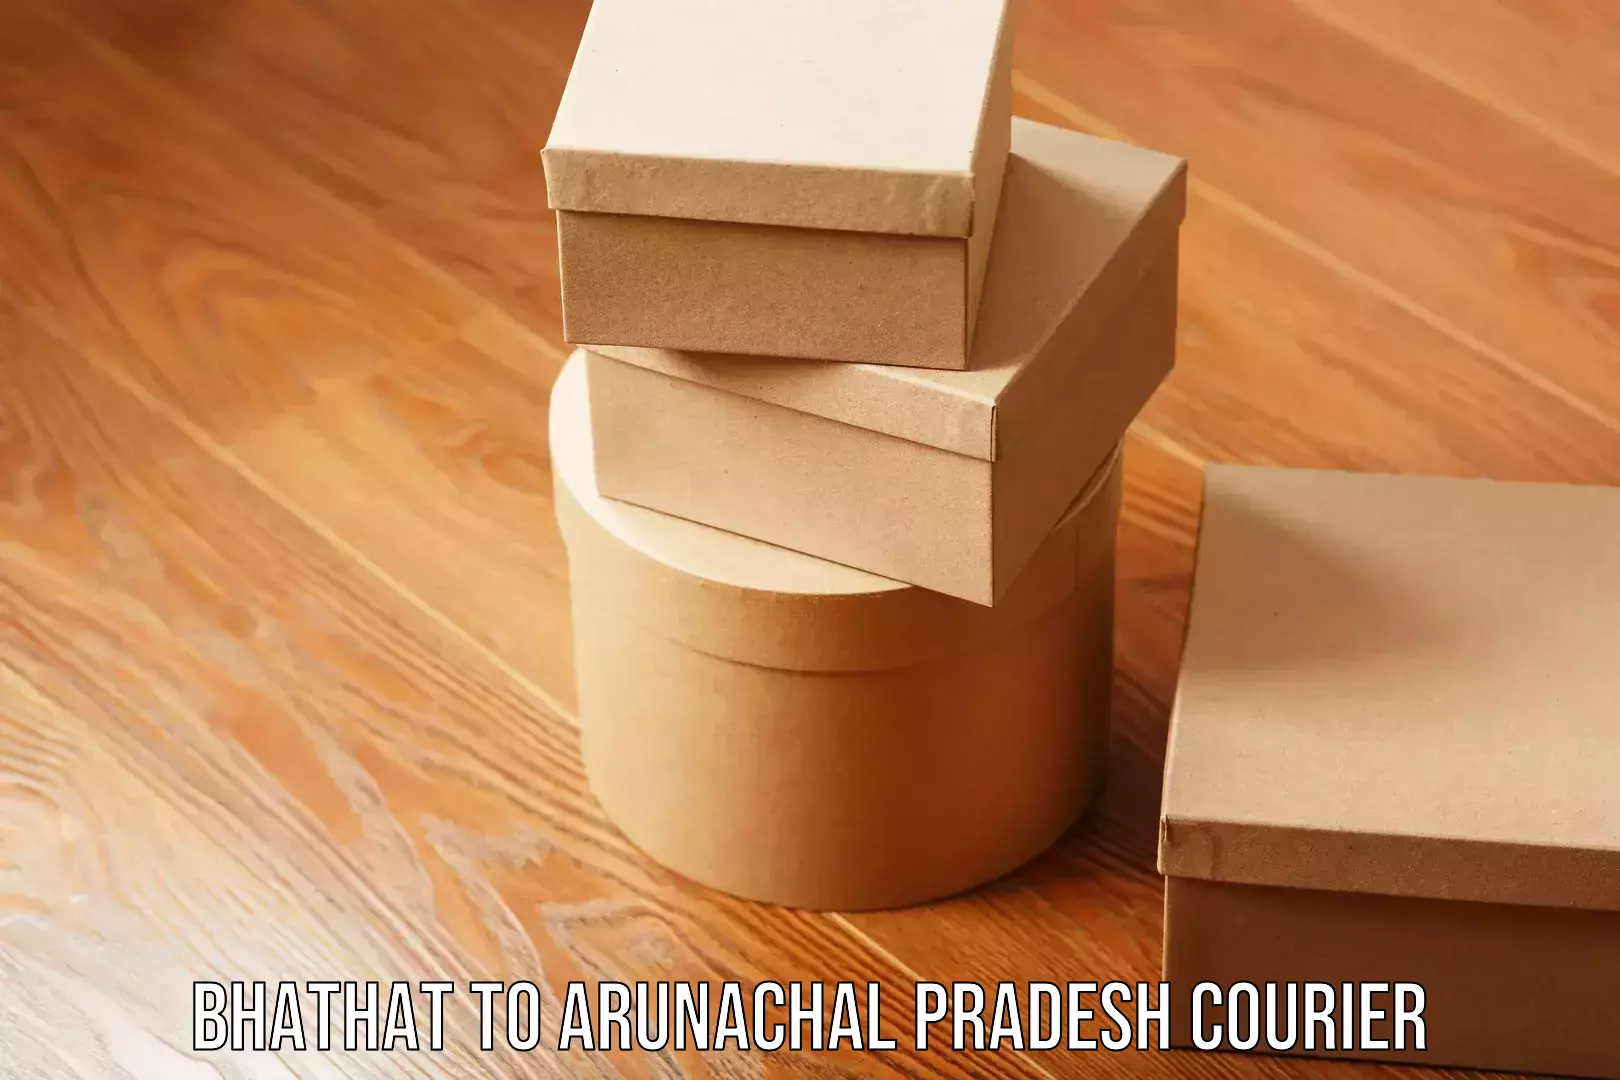 Efficient courier operations Bhathat to Arunachal Pradesh